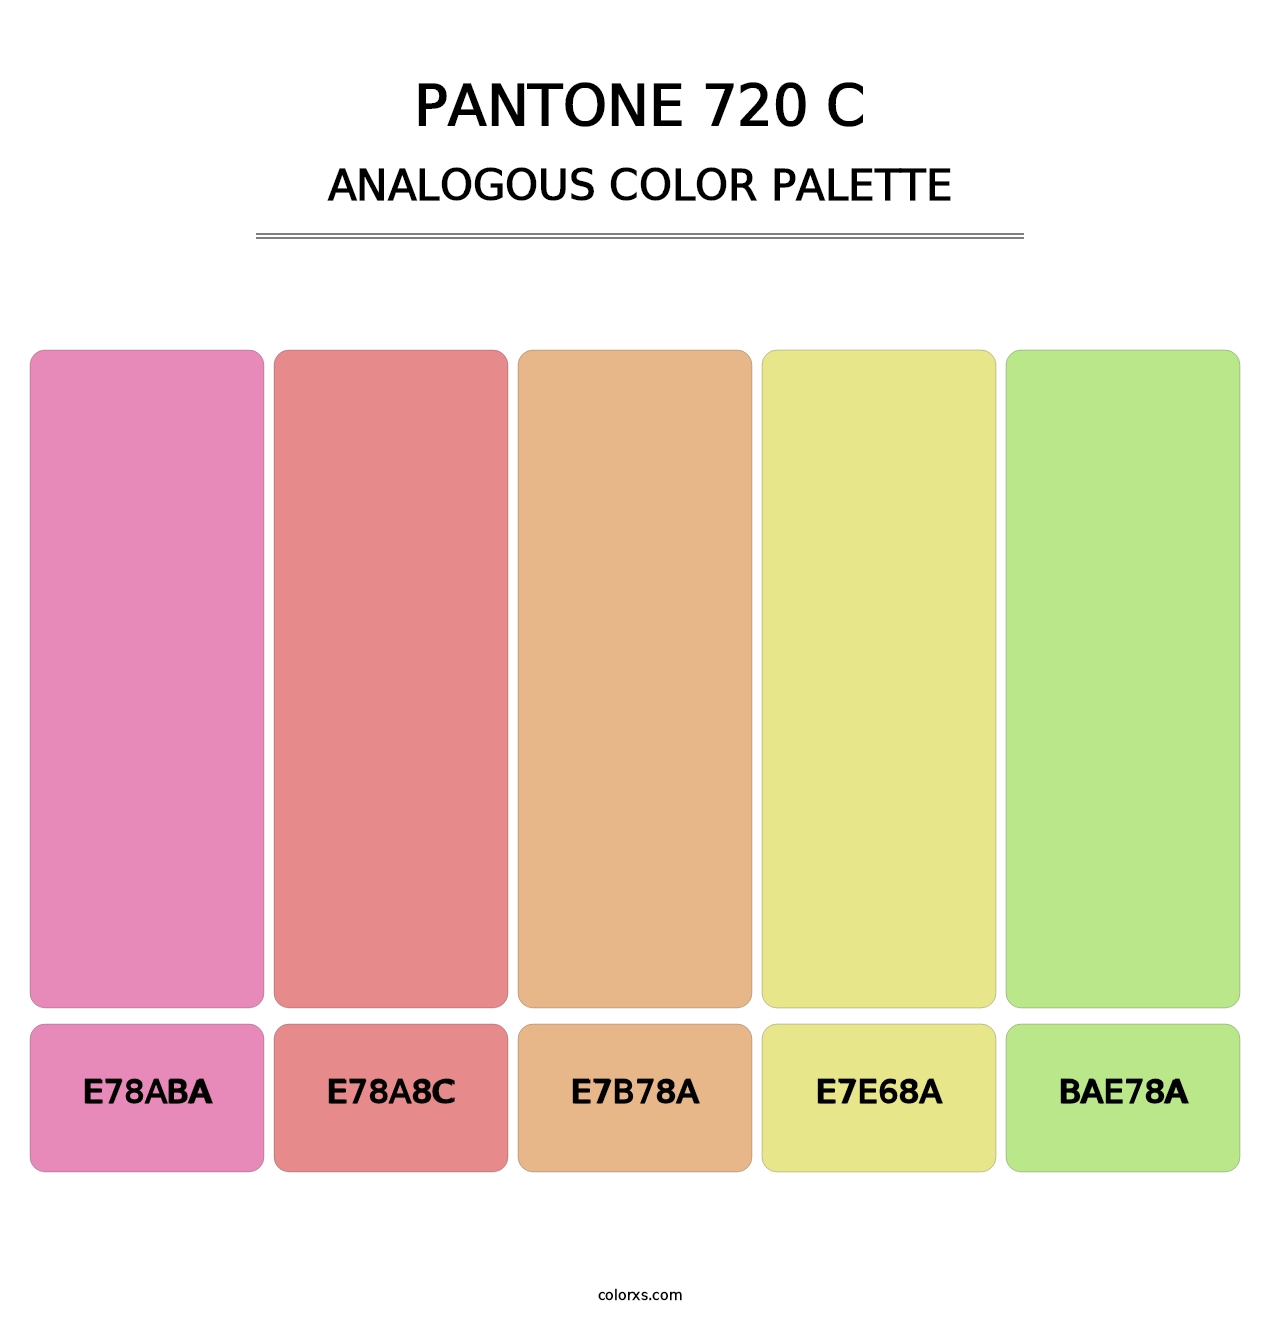 PANTONE 720 C - Analogous Color Palette